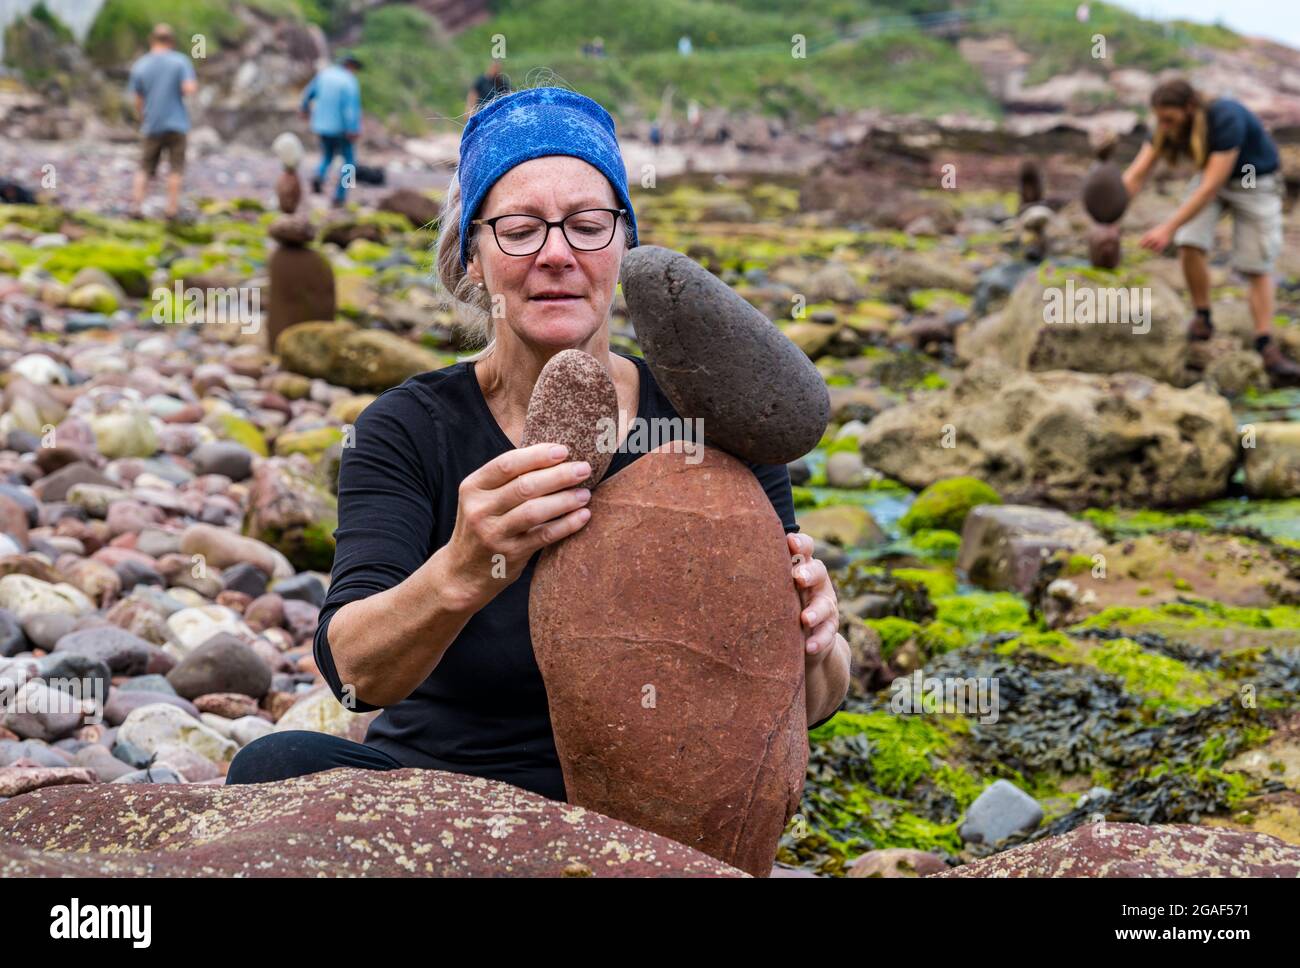 Caroline Walker, gerbeur de pierres, équilibre des pierres dans le Championnat européen de pierre sur la plage, Dunbar, East Lothian, Écosse, Royaume-Uni Banque D'Images